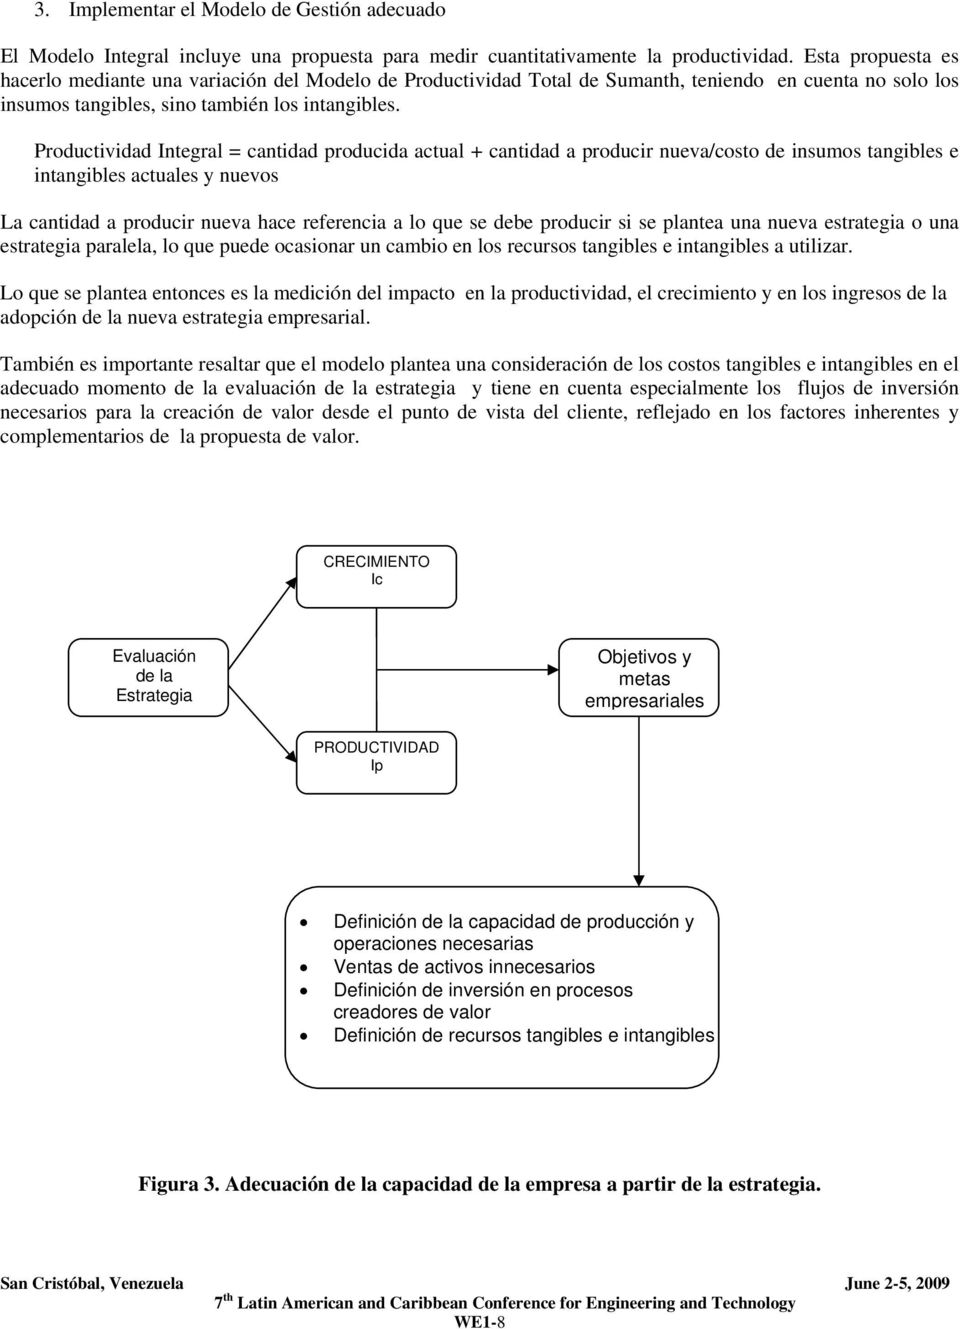 Modelo Integral para Optimizar la Productividad - PDF Descargar libre